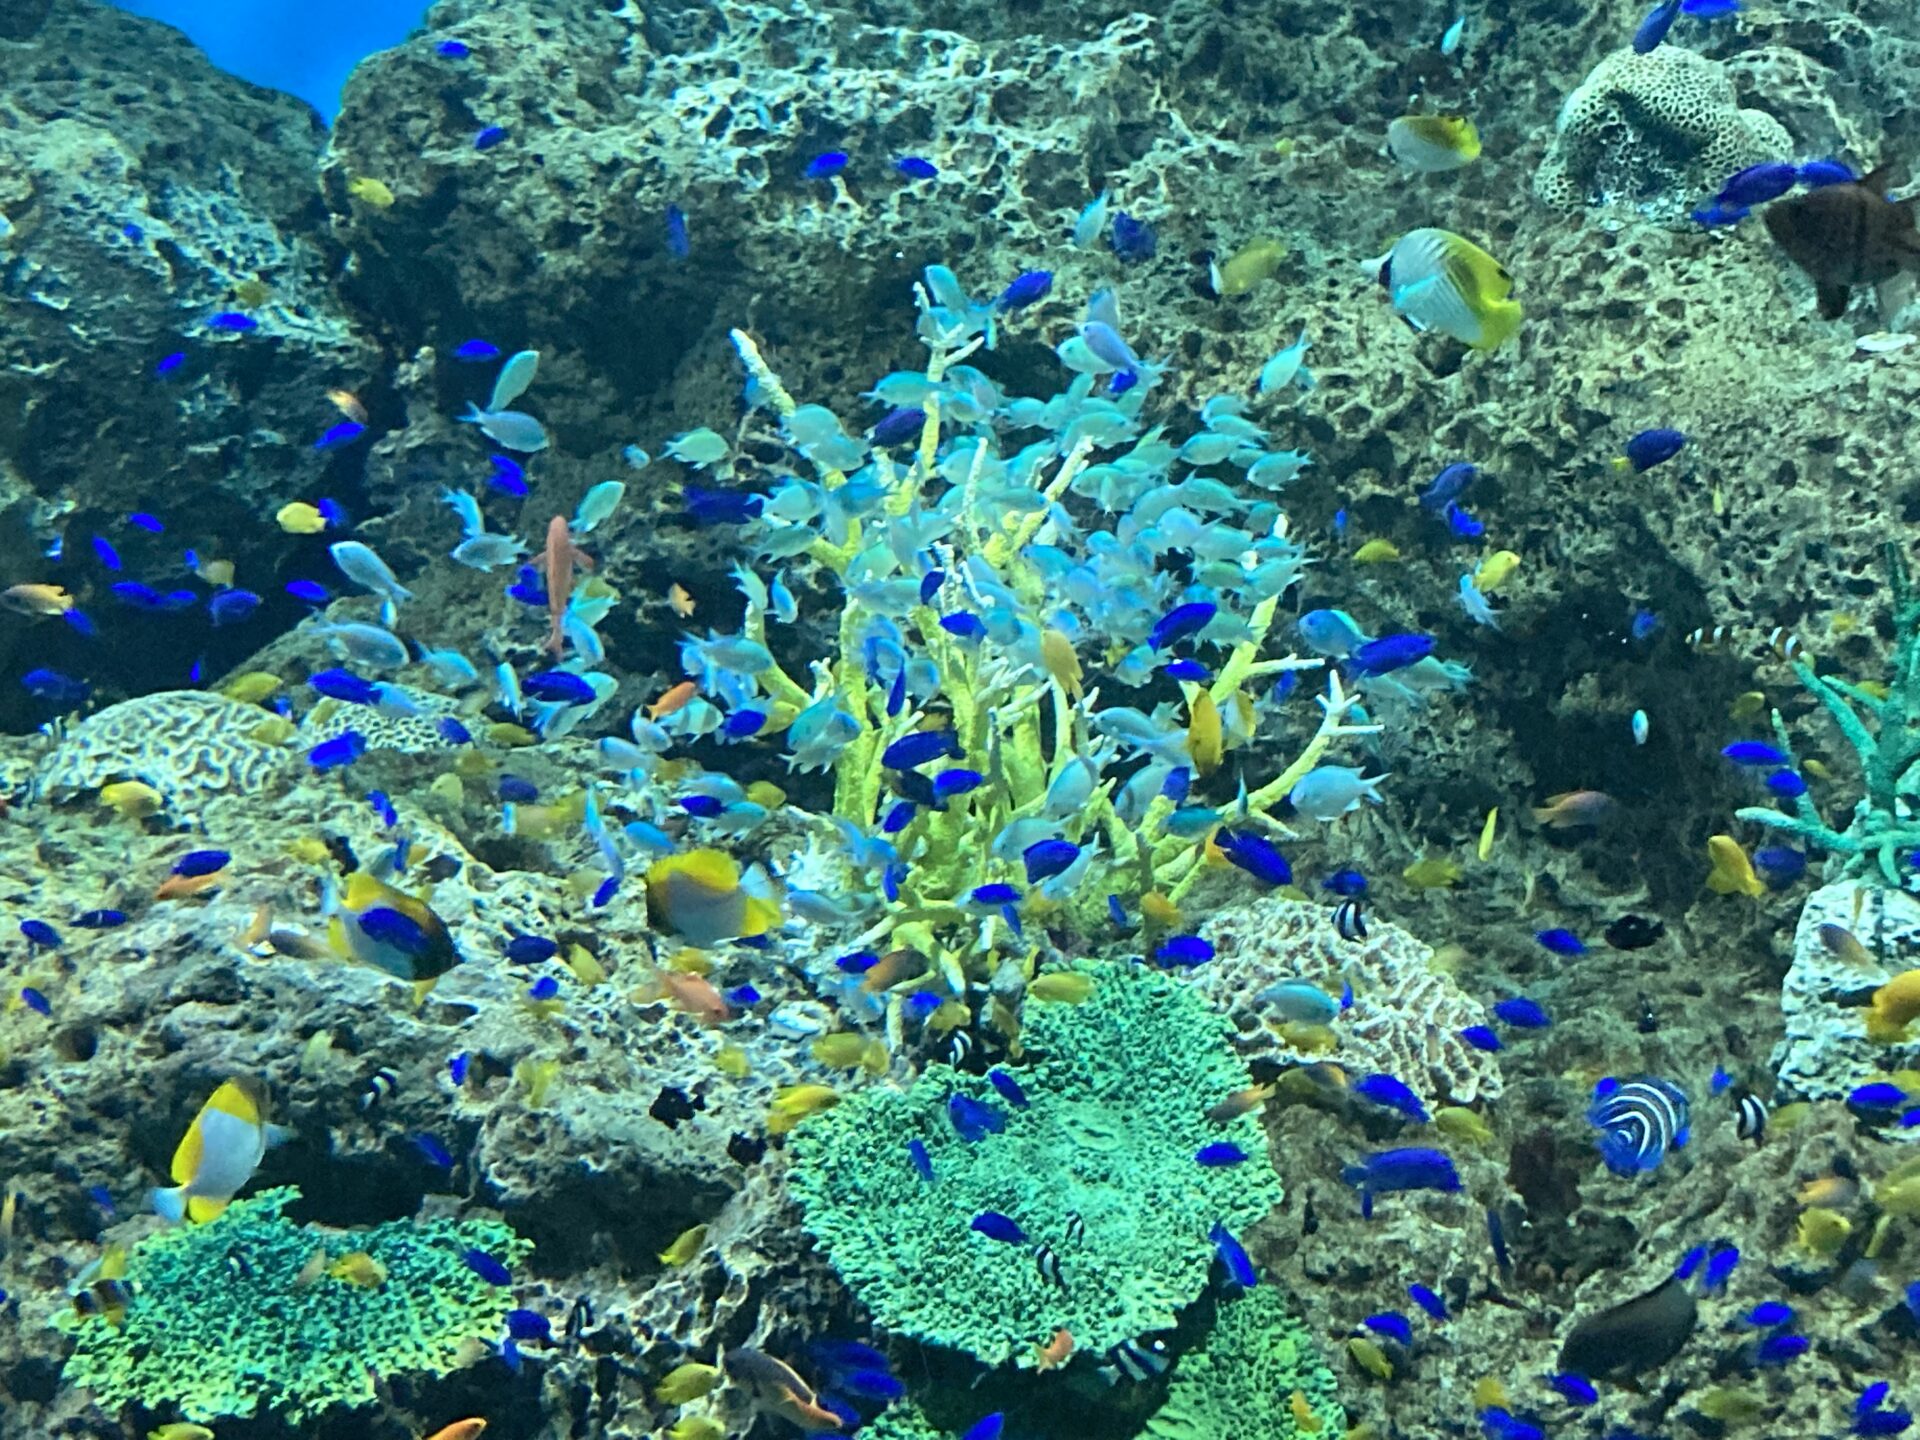 “ฝูงปลาในแนวปะการังระยิบระยับ” เพิ่มพลังตั้งแต่วันเสาร์ที่ 2023 กรกฎาคม 7!